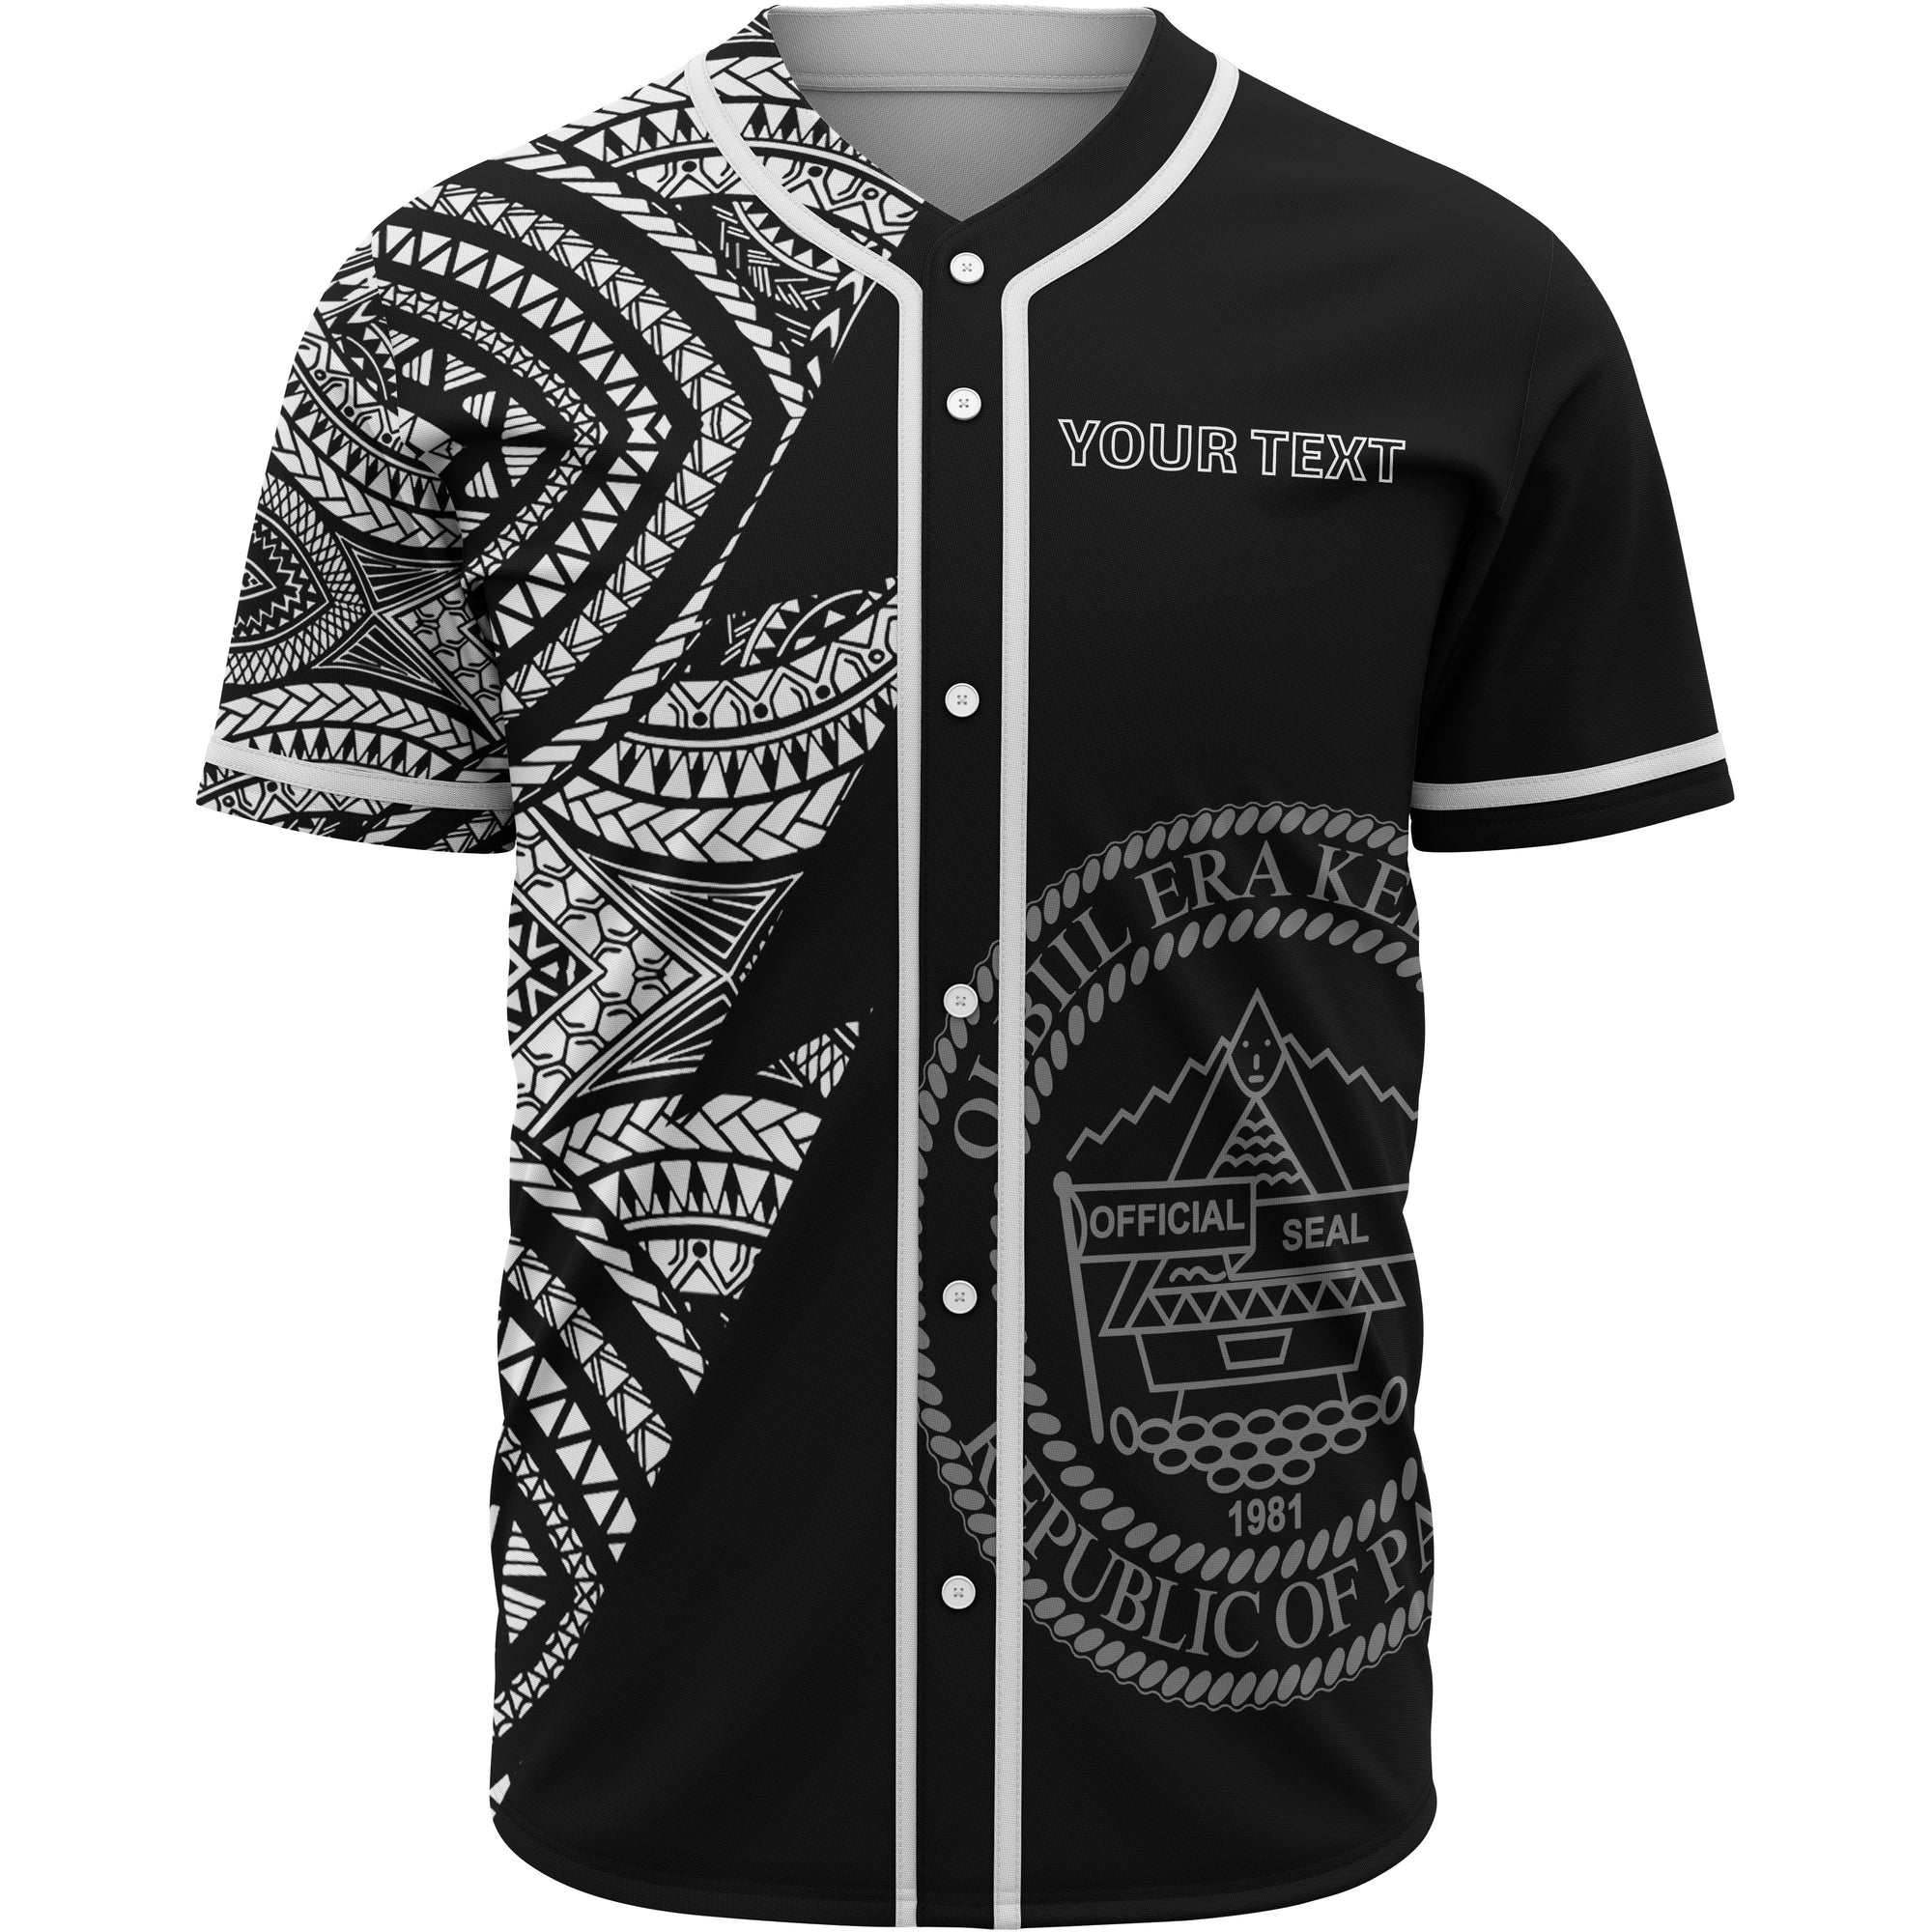 Palau Custom Personalized Baseball Shirt - Flash Style White Unisex White - Polynesian Pride